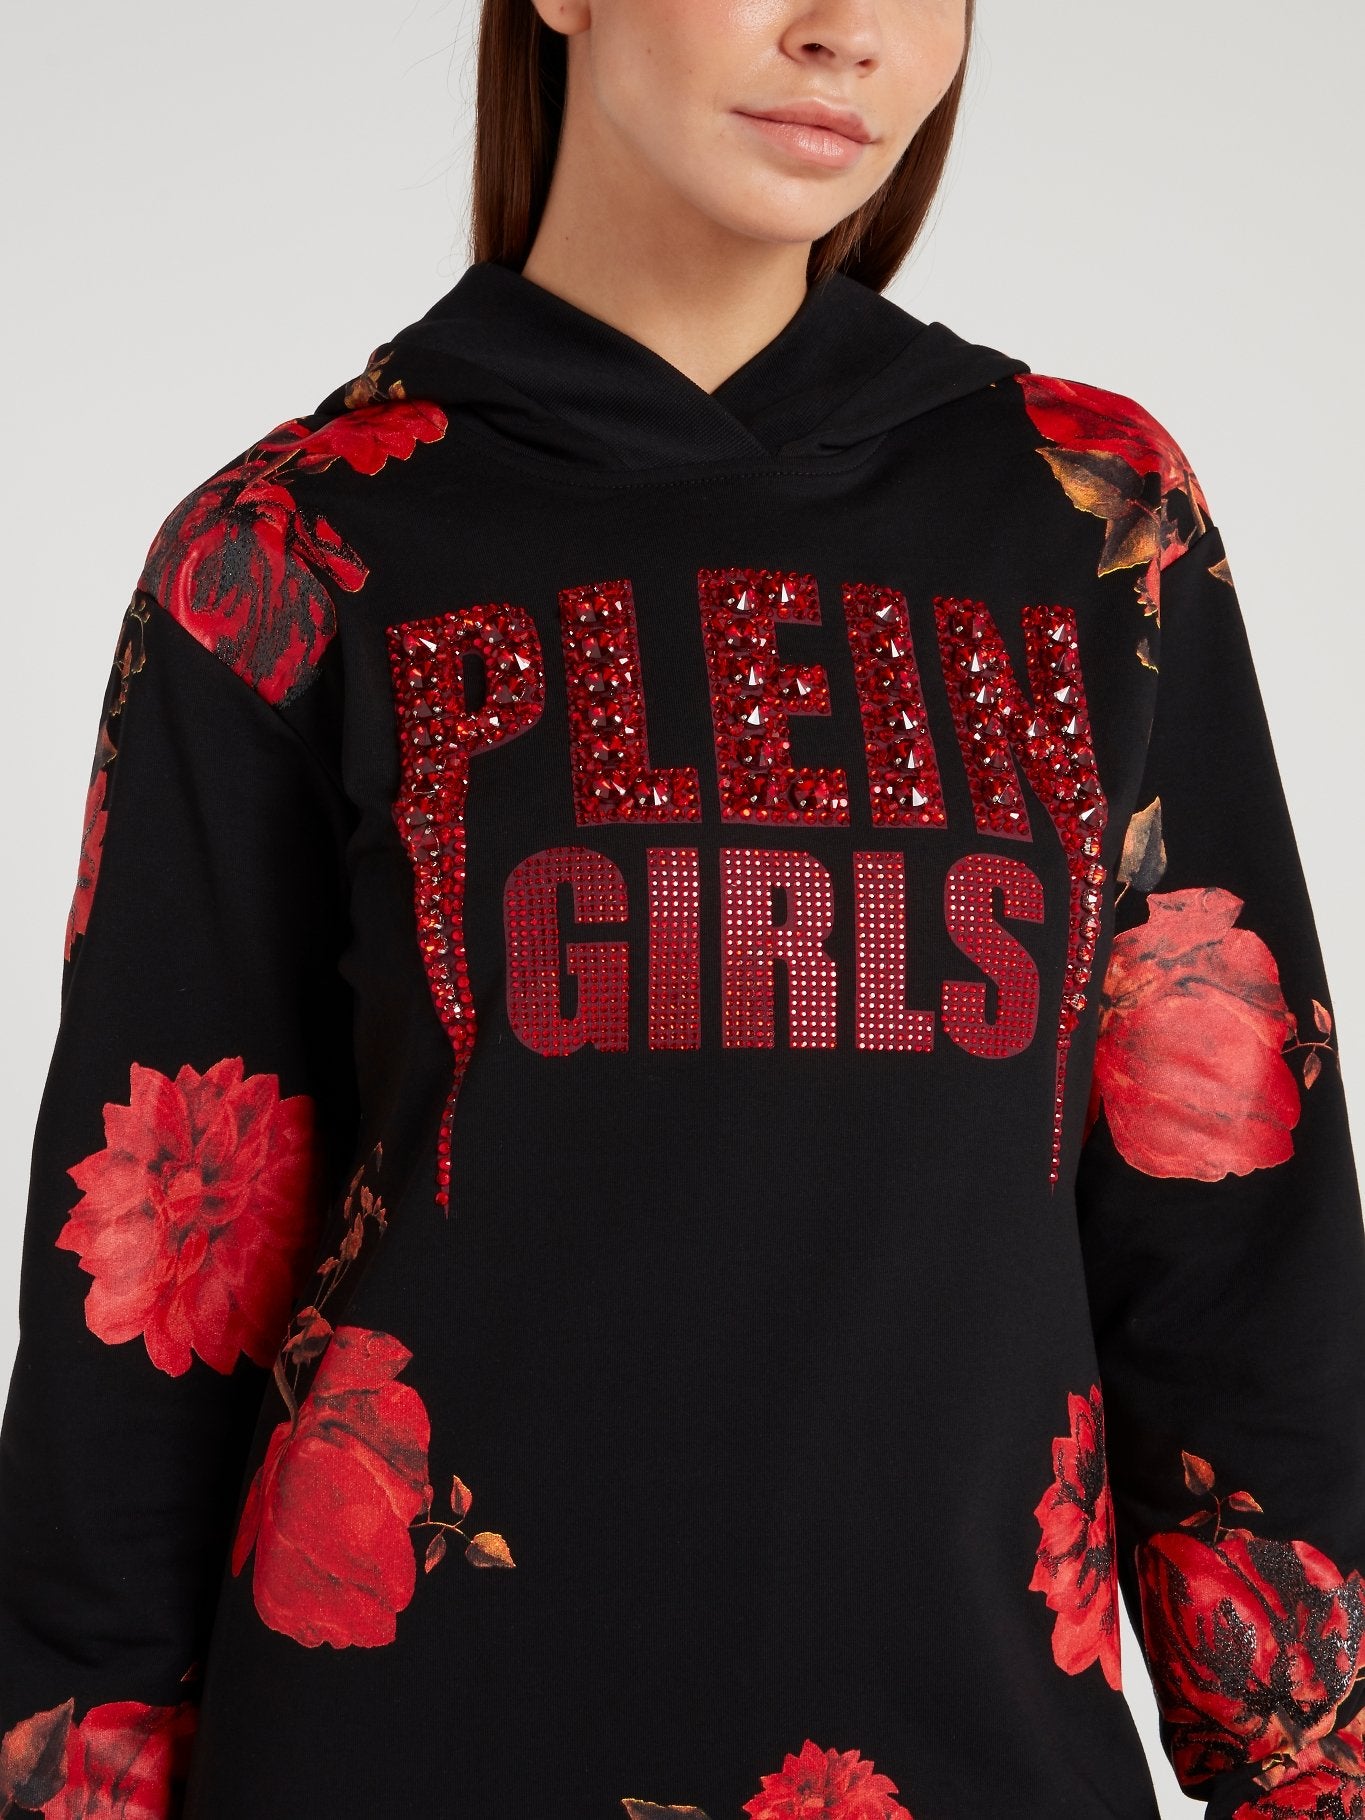 Flower Print Hoodie Sweatshirt